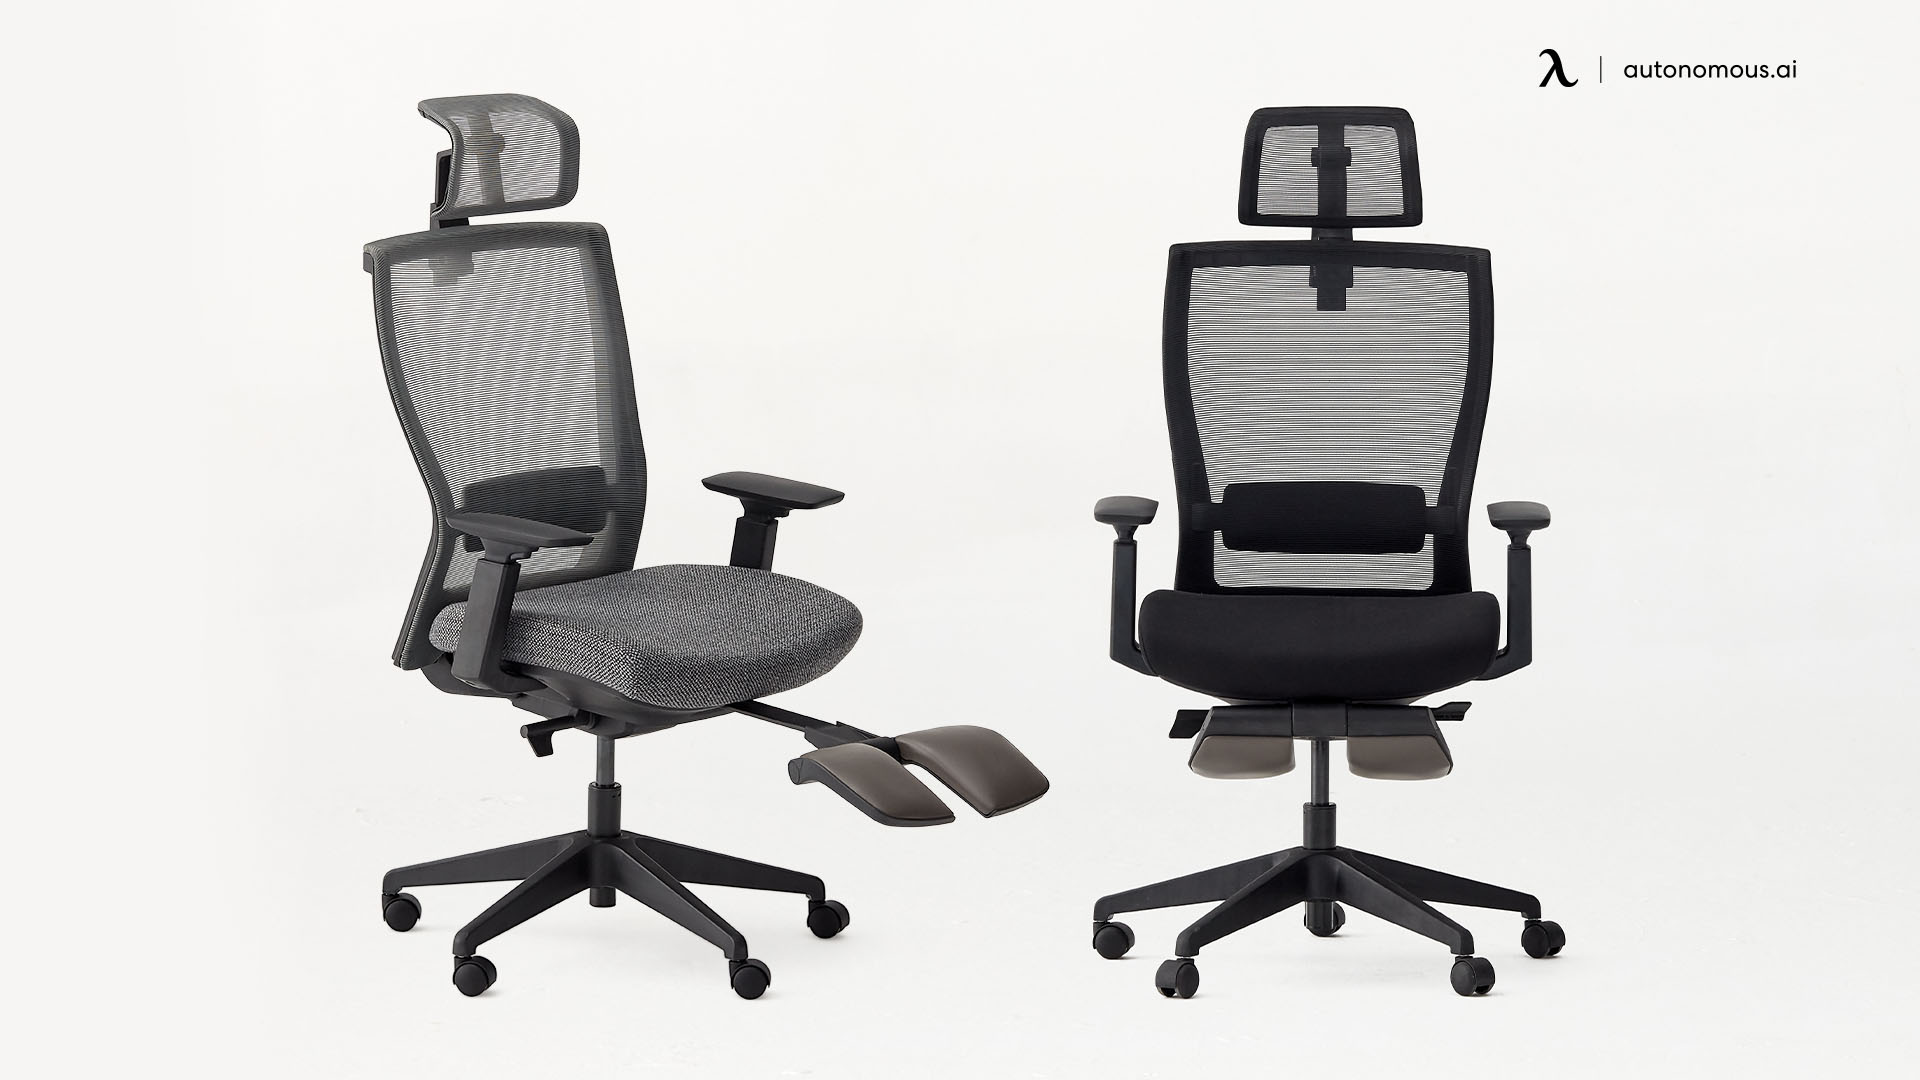 ErgoChair Recline low back office chair